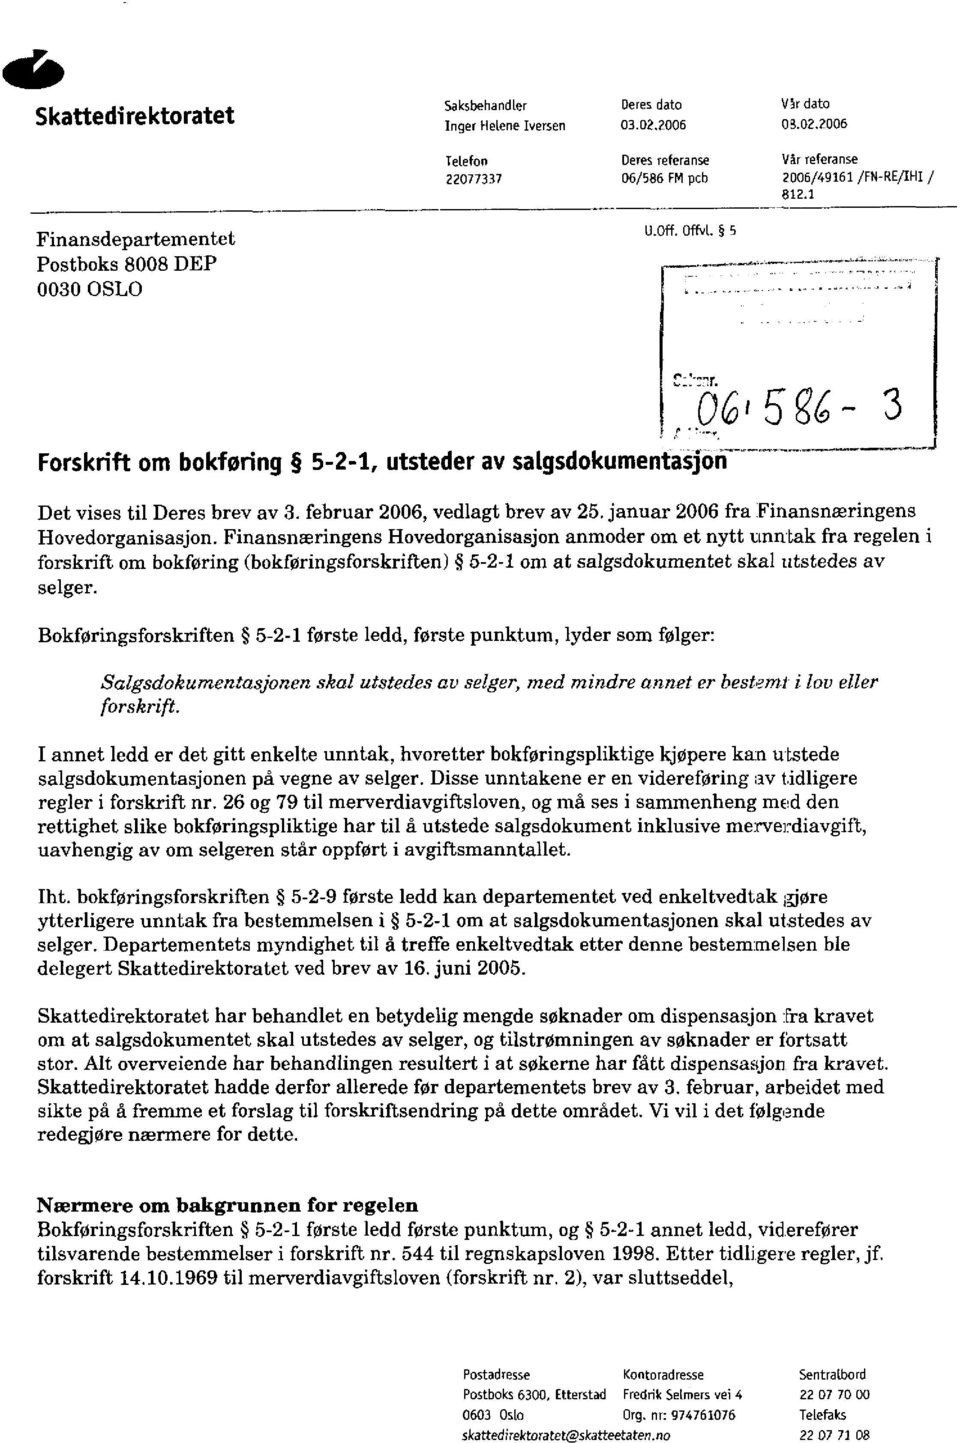 februar 2006, vedlagt brev av 25. januar 2006 fra Finansnæringens Hovedorganisasjon.